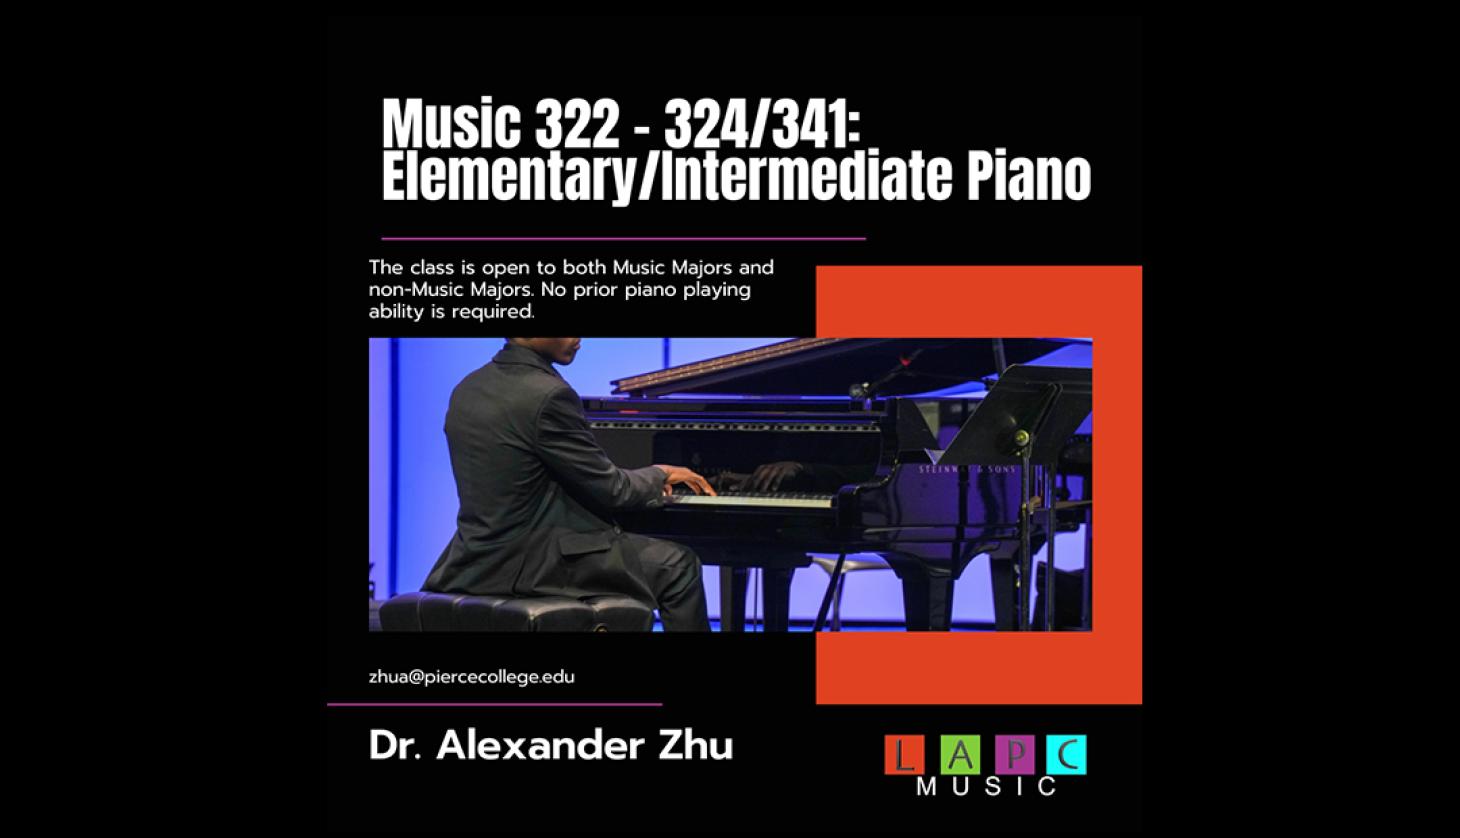 Music 322 - Piano